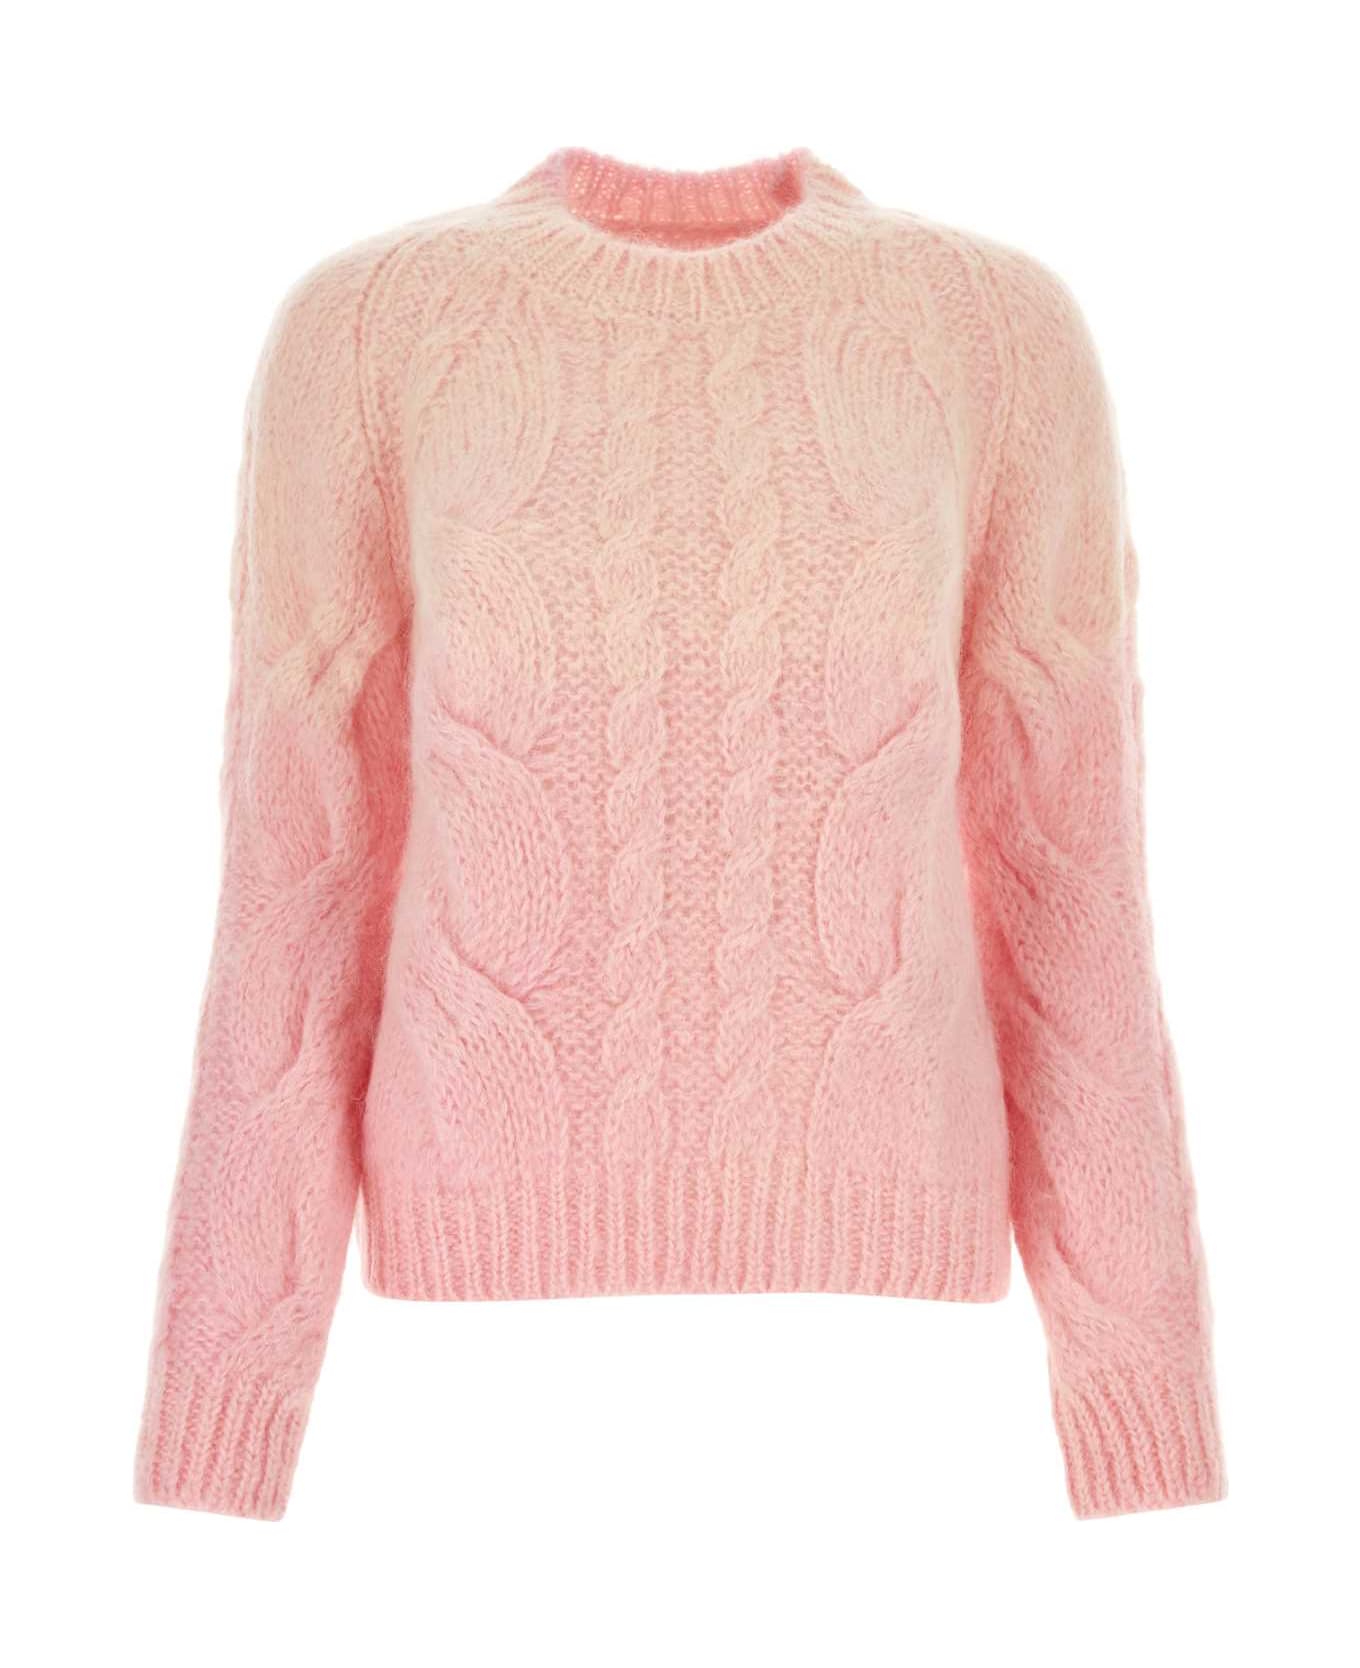 Maison Margiela Mohair Blend Sweater - PINK